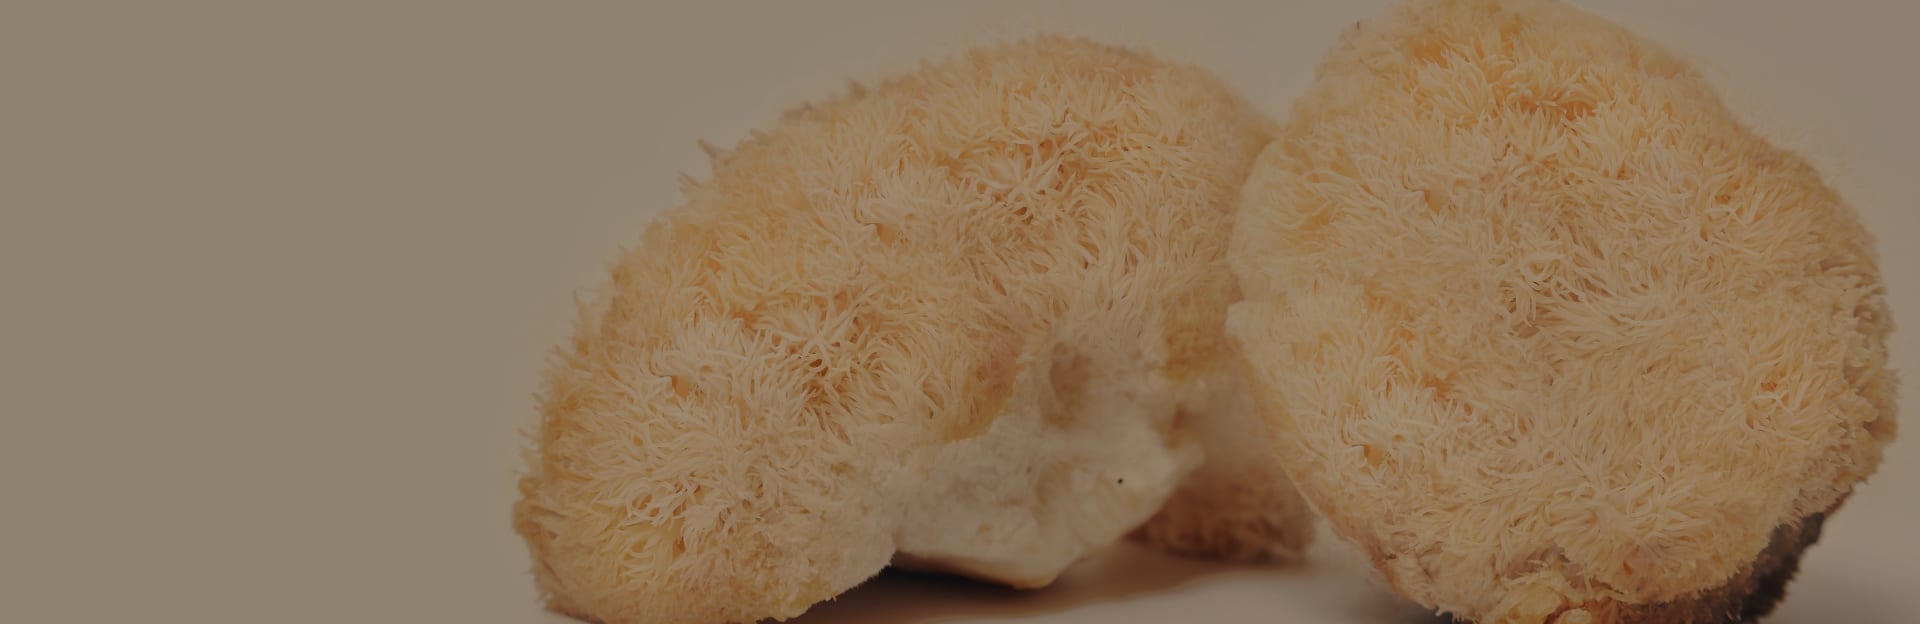 Mushroom FAQ’s